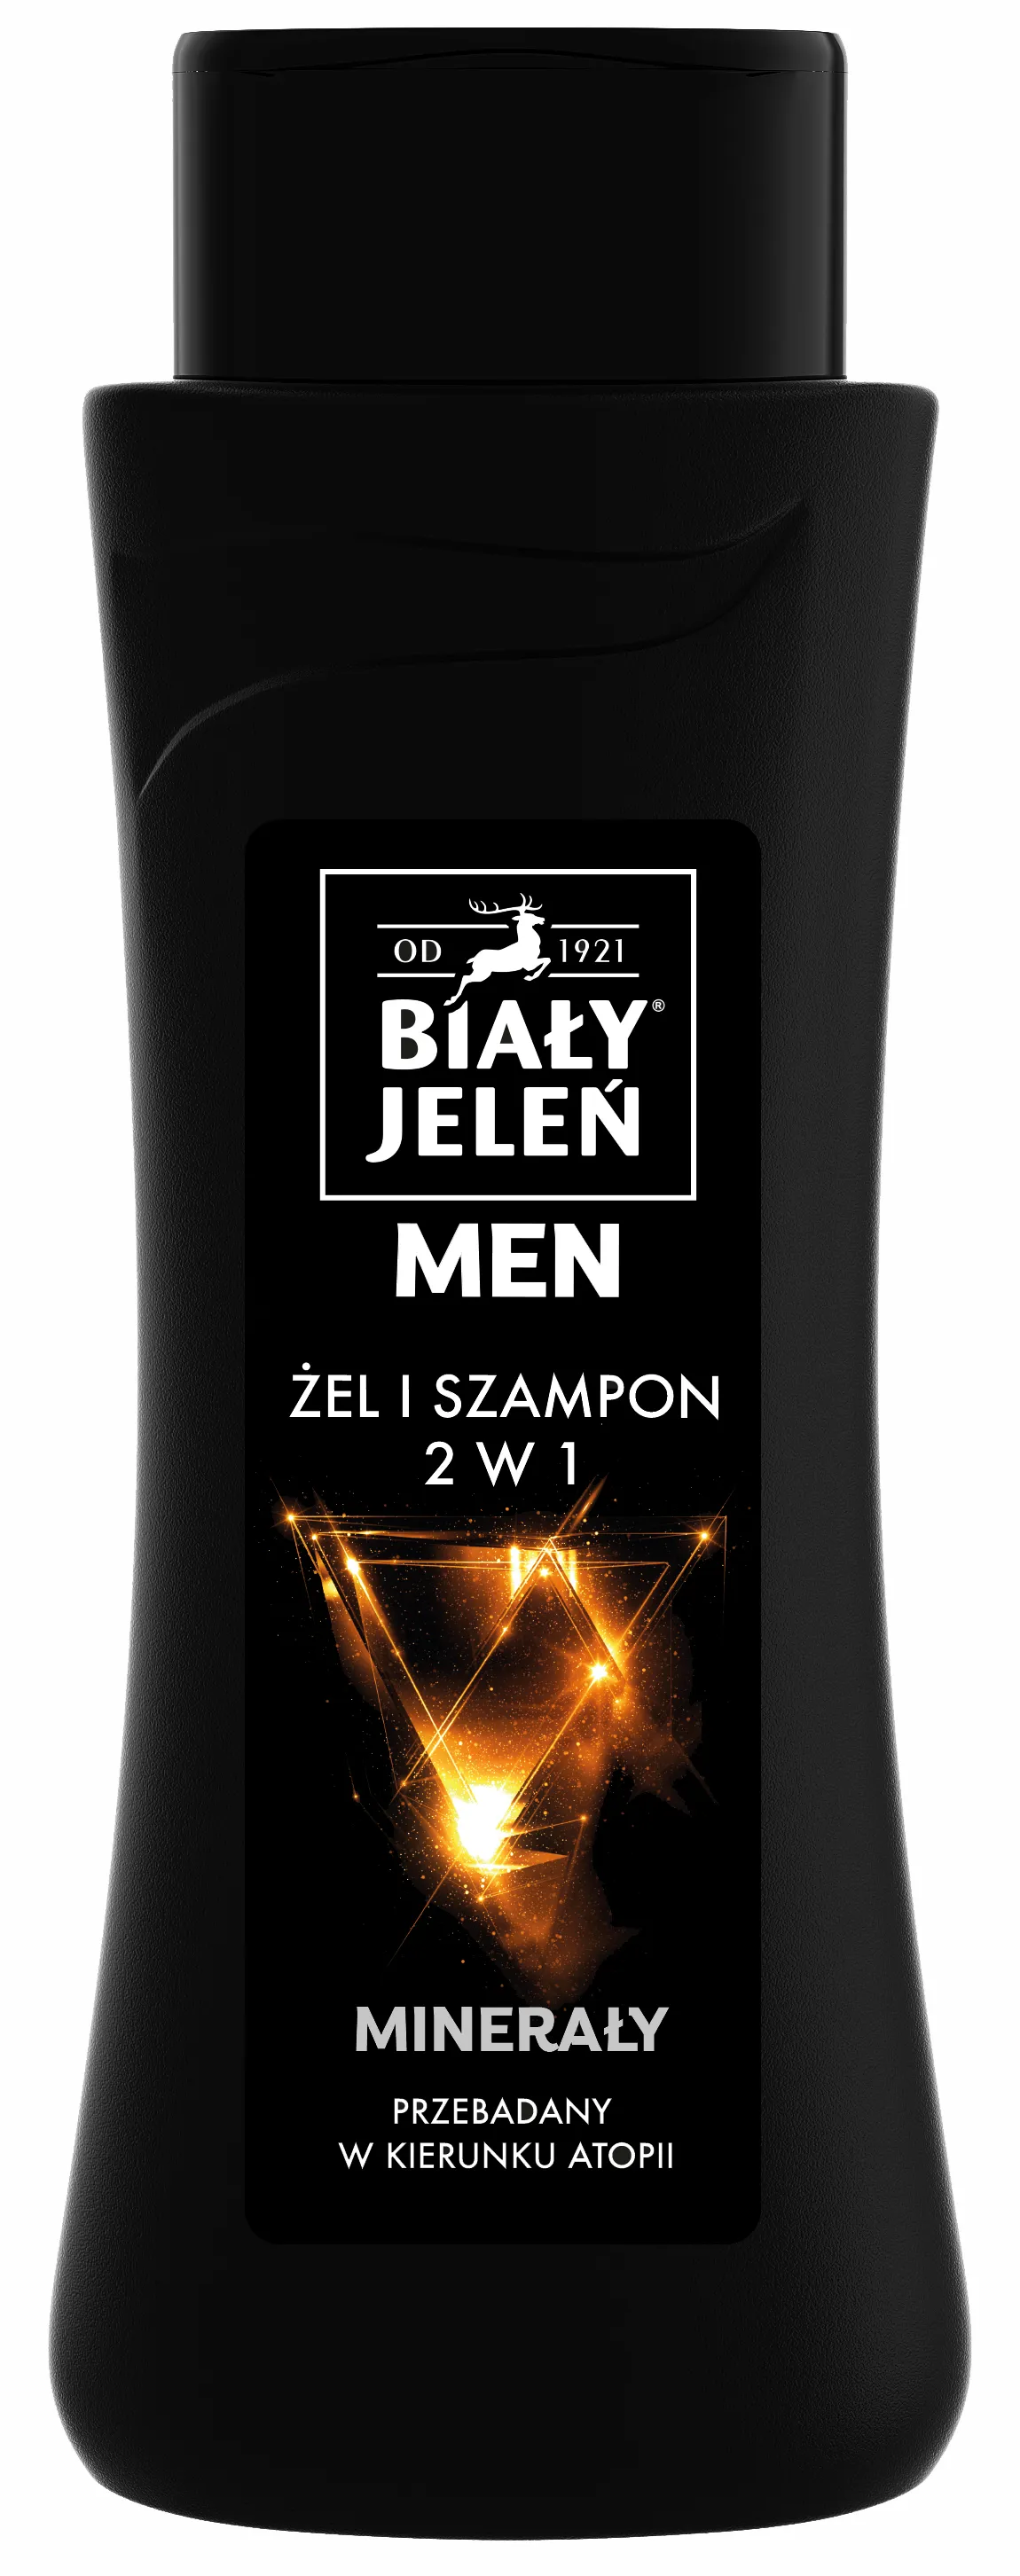 Biały Jeleń Men, żel szampon z minerałami, 300 ml